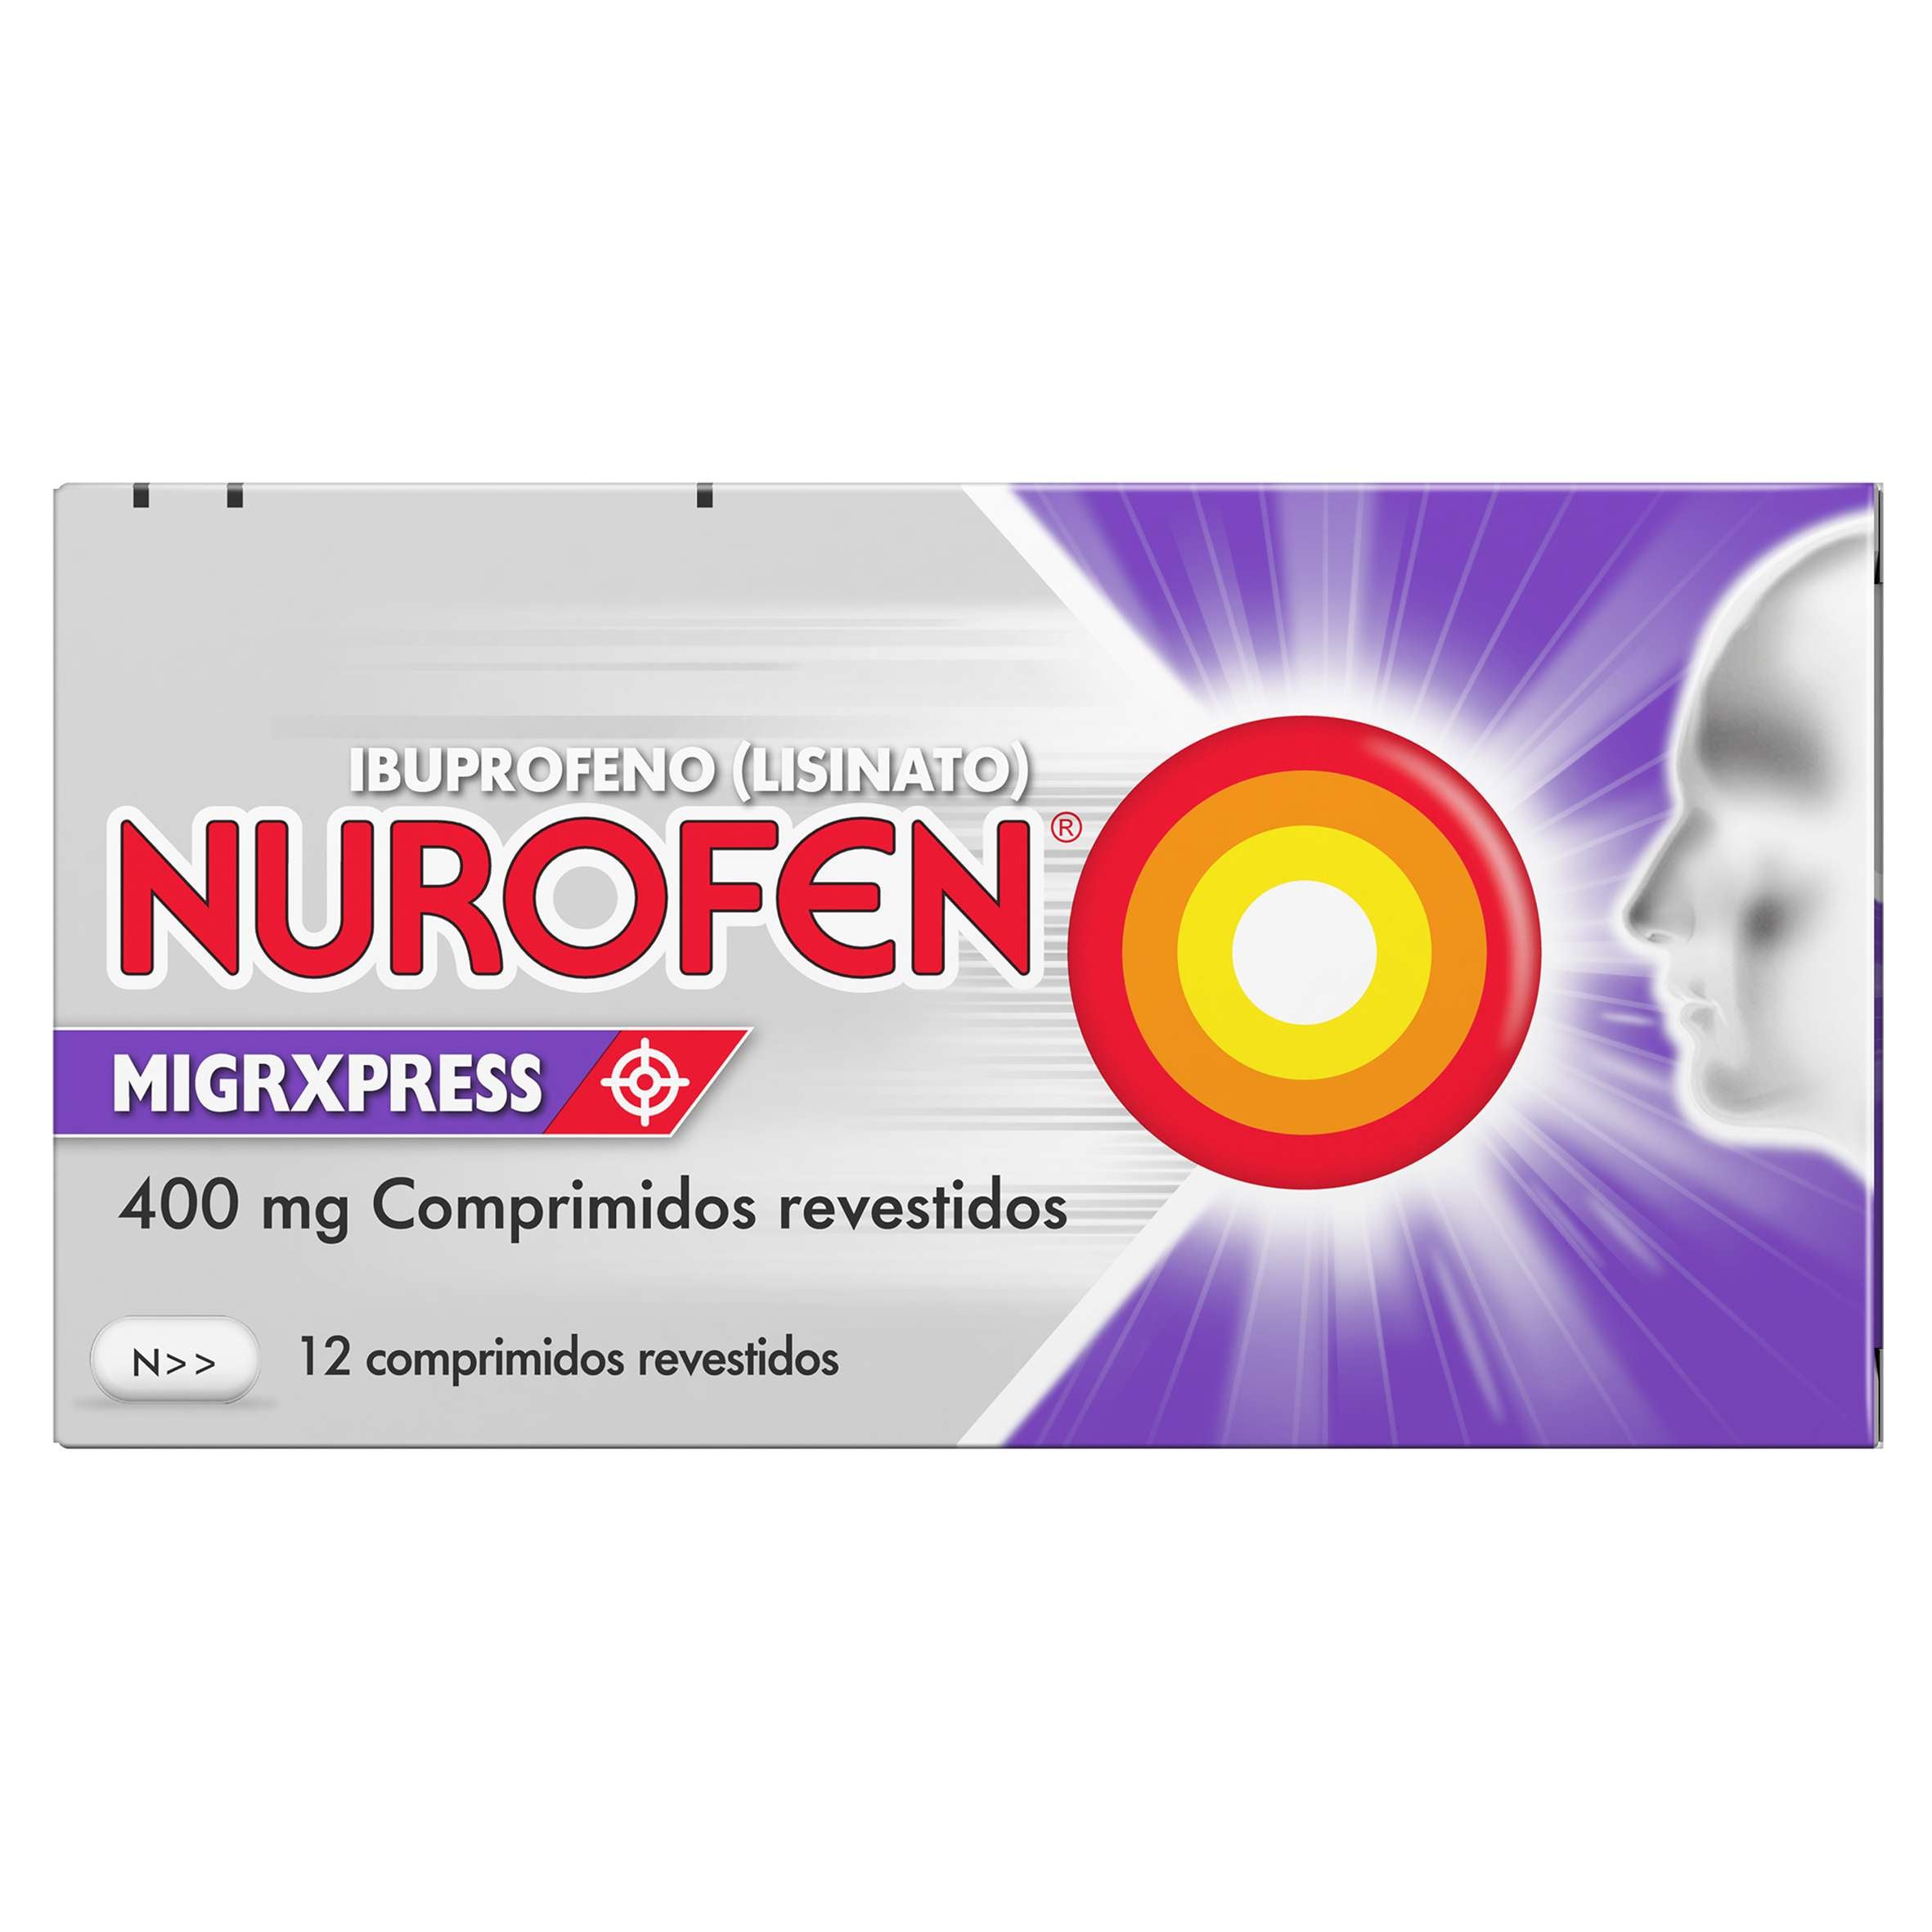 Nurofen Migrxpress, 400 Mg (X12 Comprimidos Revestidos)